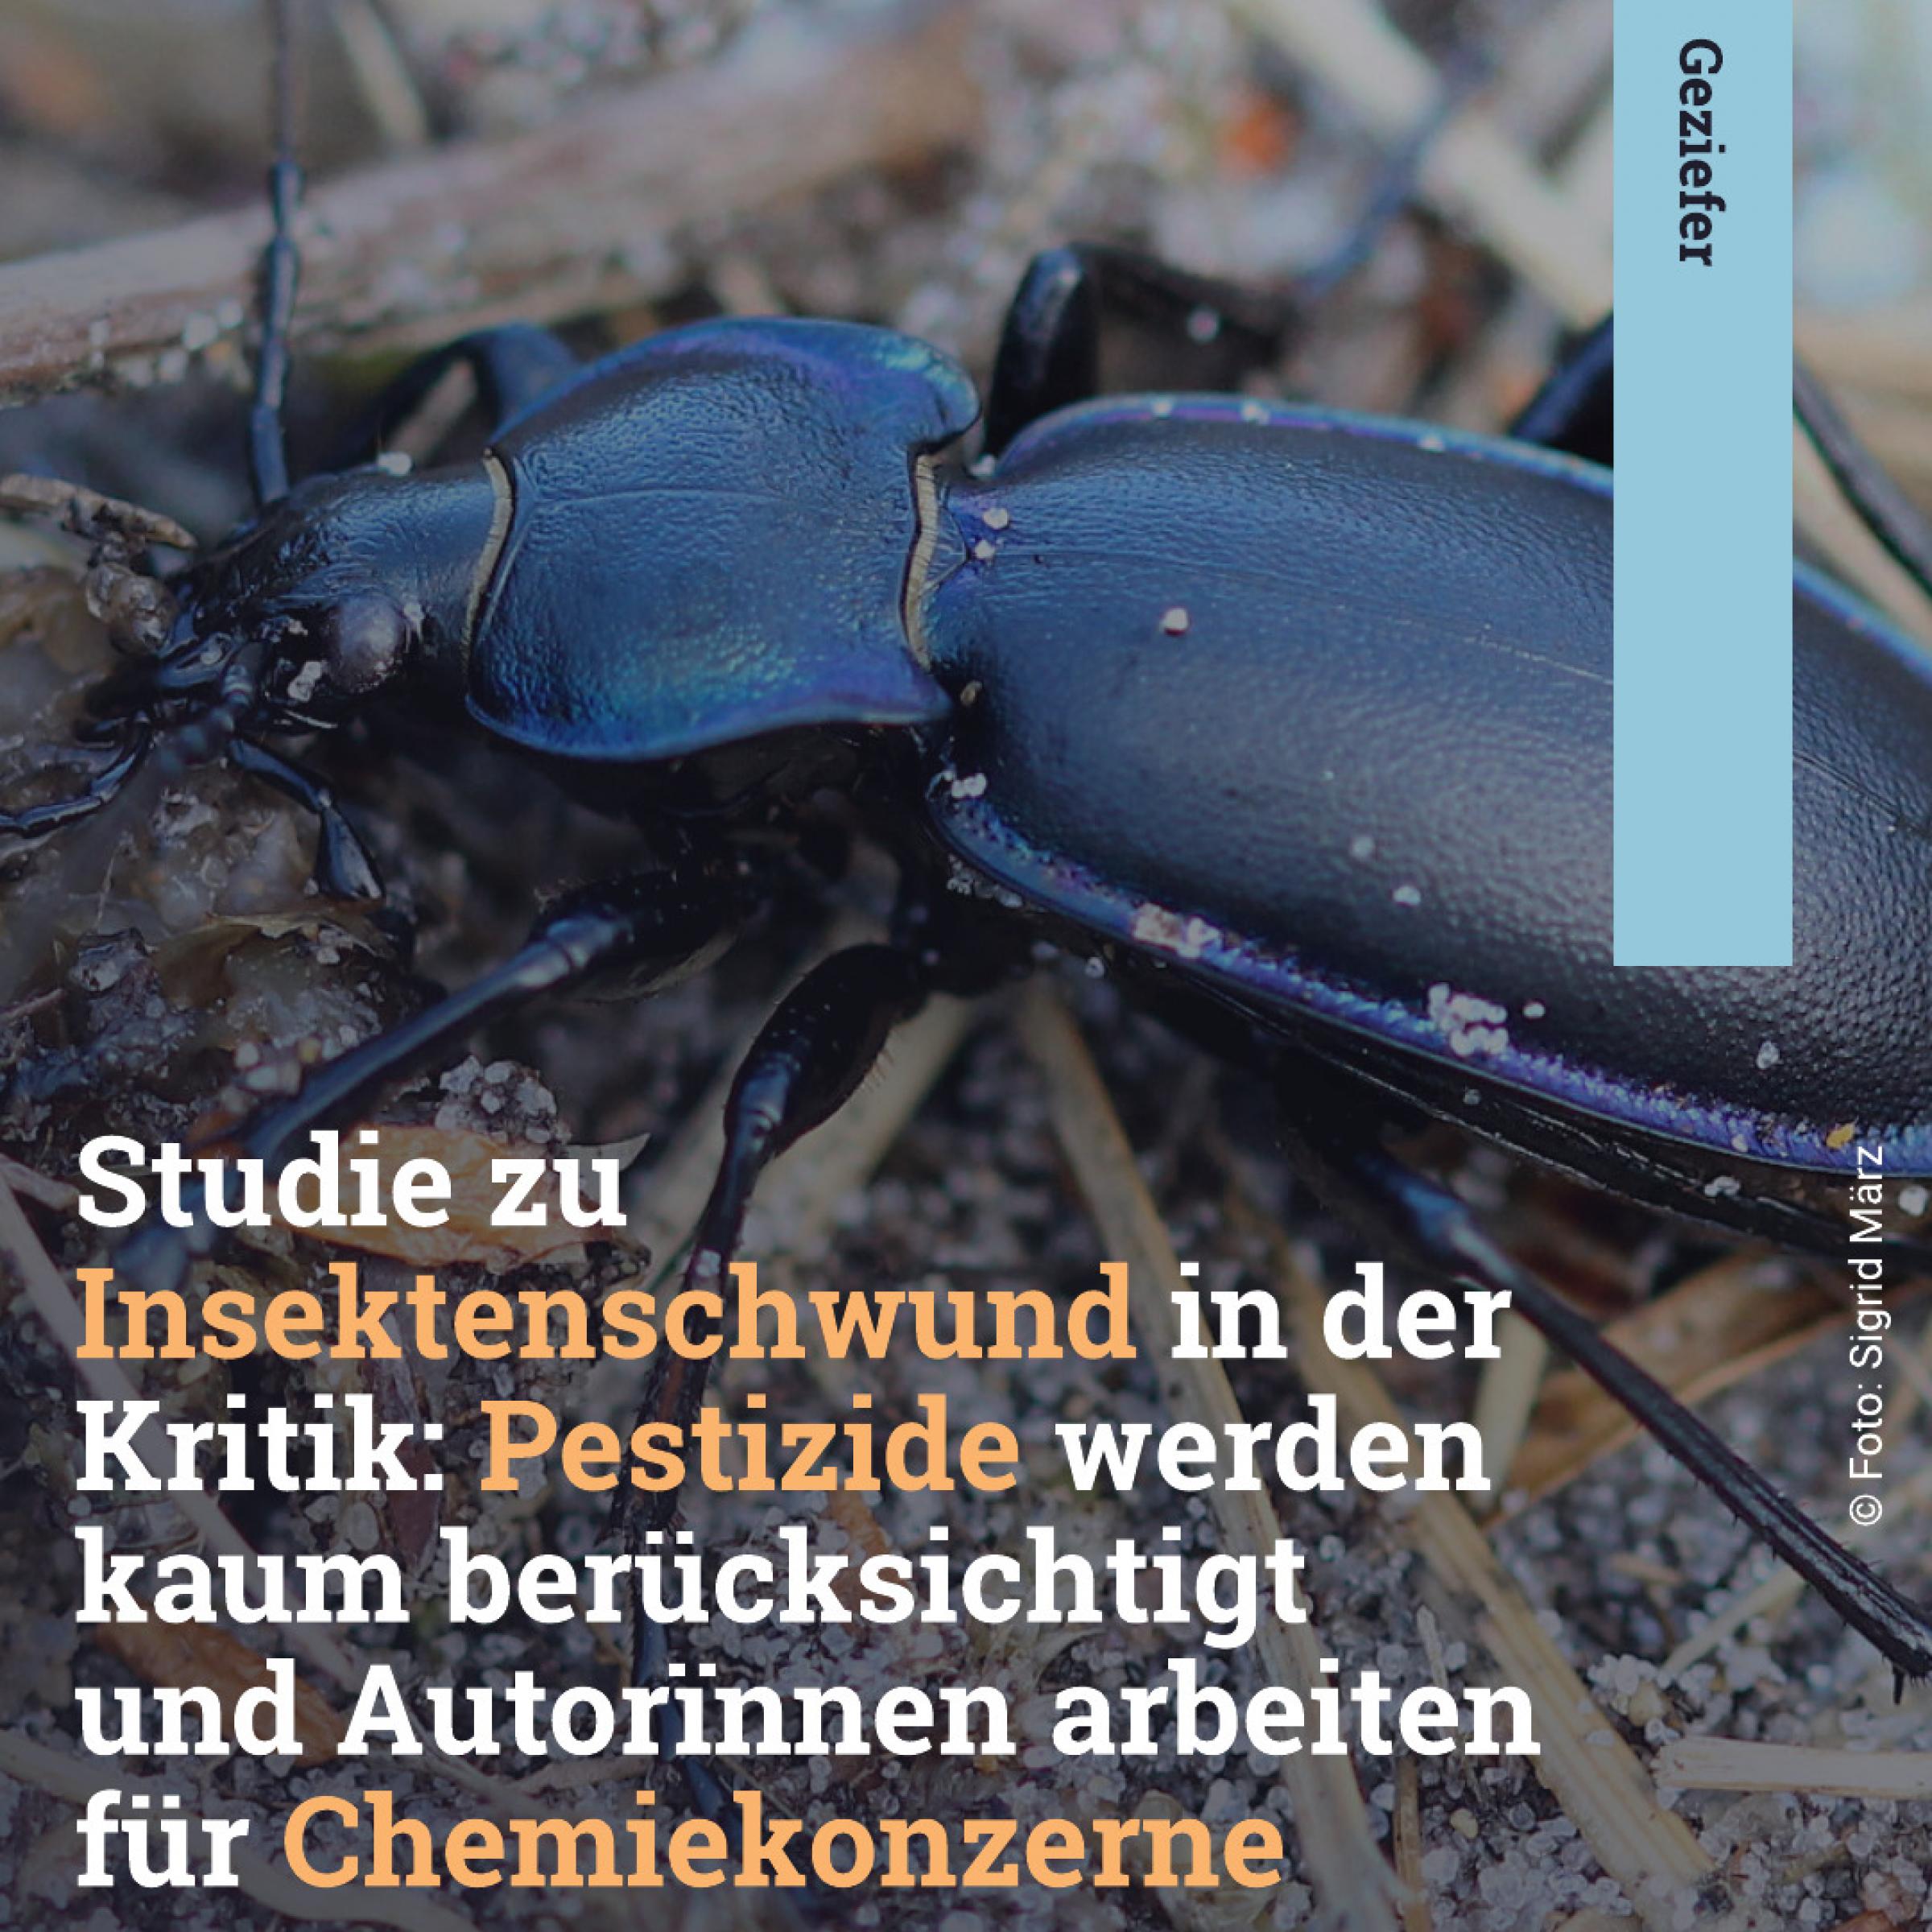 Im Hintergrund ein Käfer; Text davor: Studie zu Insektenschwund in der Kritik: Pestizide werden kaum berücksichtigt und Autorïnnen arbeiten für Chemiekonzerne